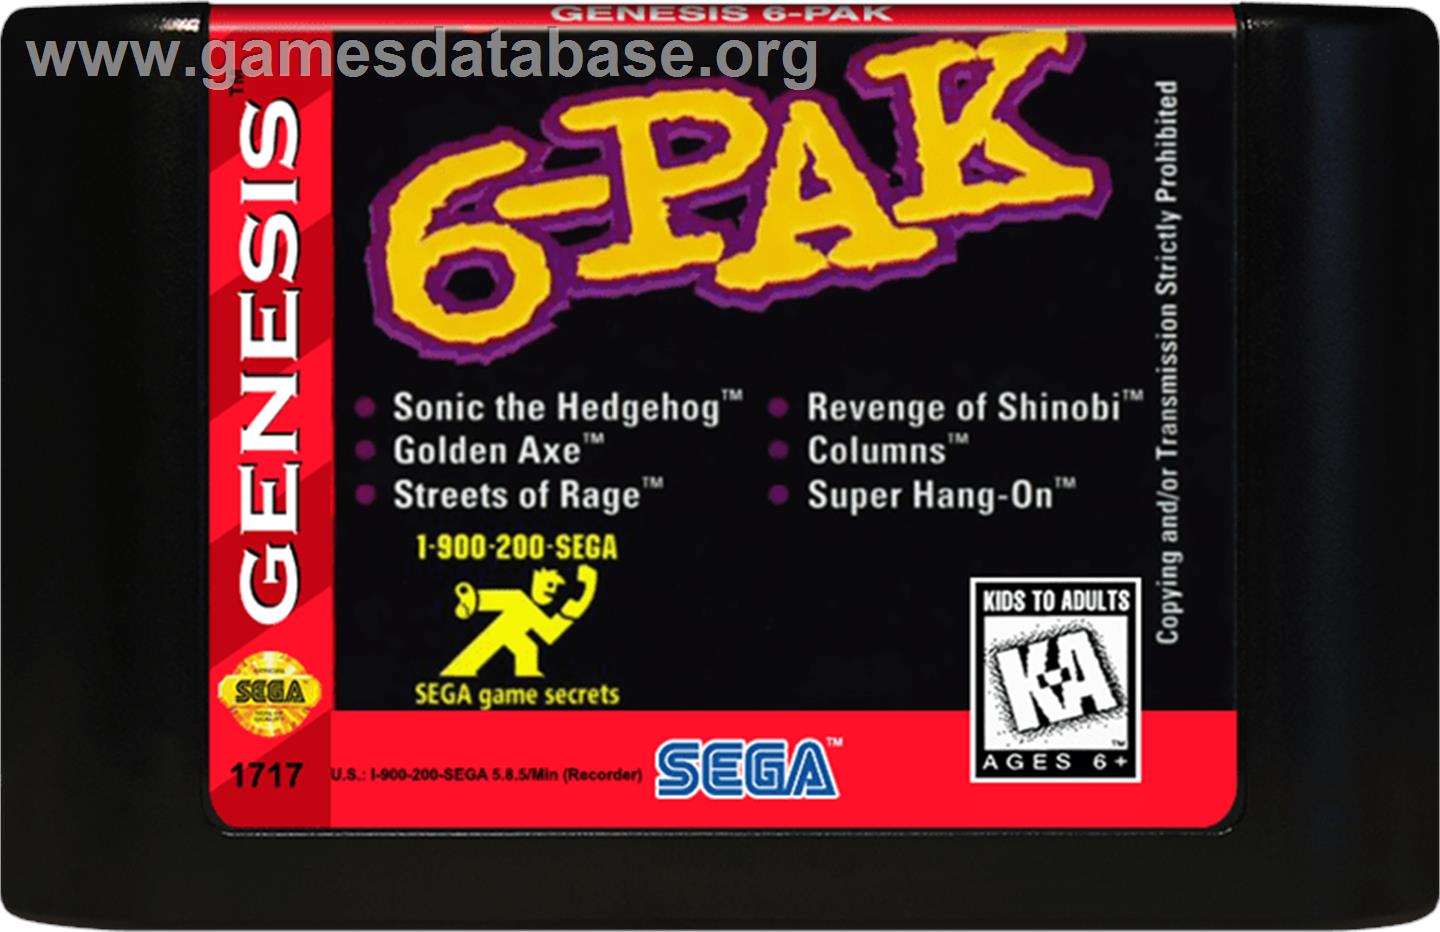 6-PAK - Sega Genesis - Artwork - Cartridge